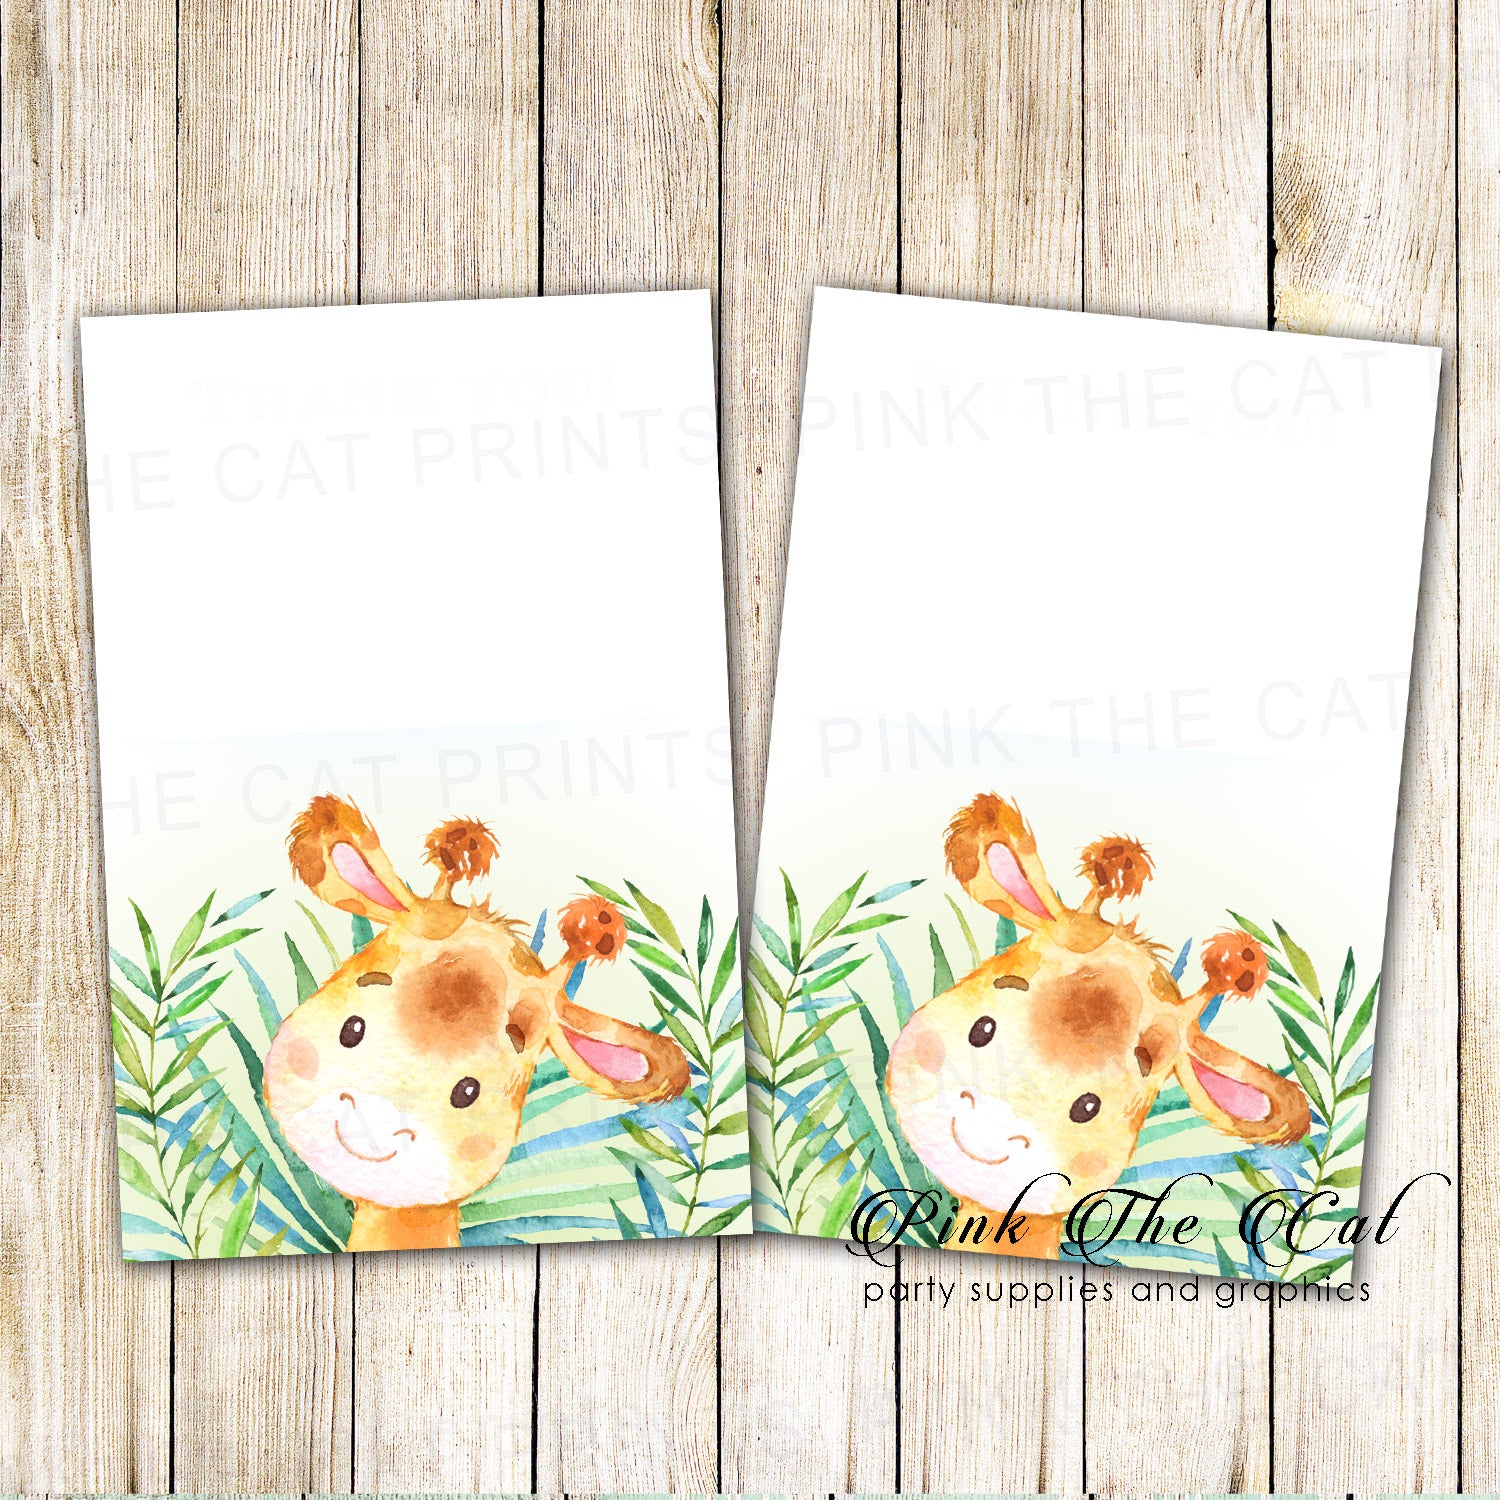 30 thank you cards invitations giraffe baby shower birthday boy & envelopes